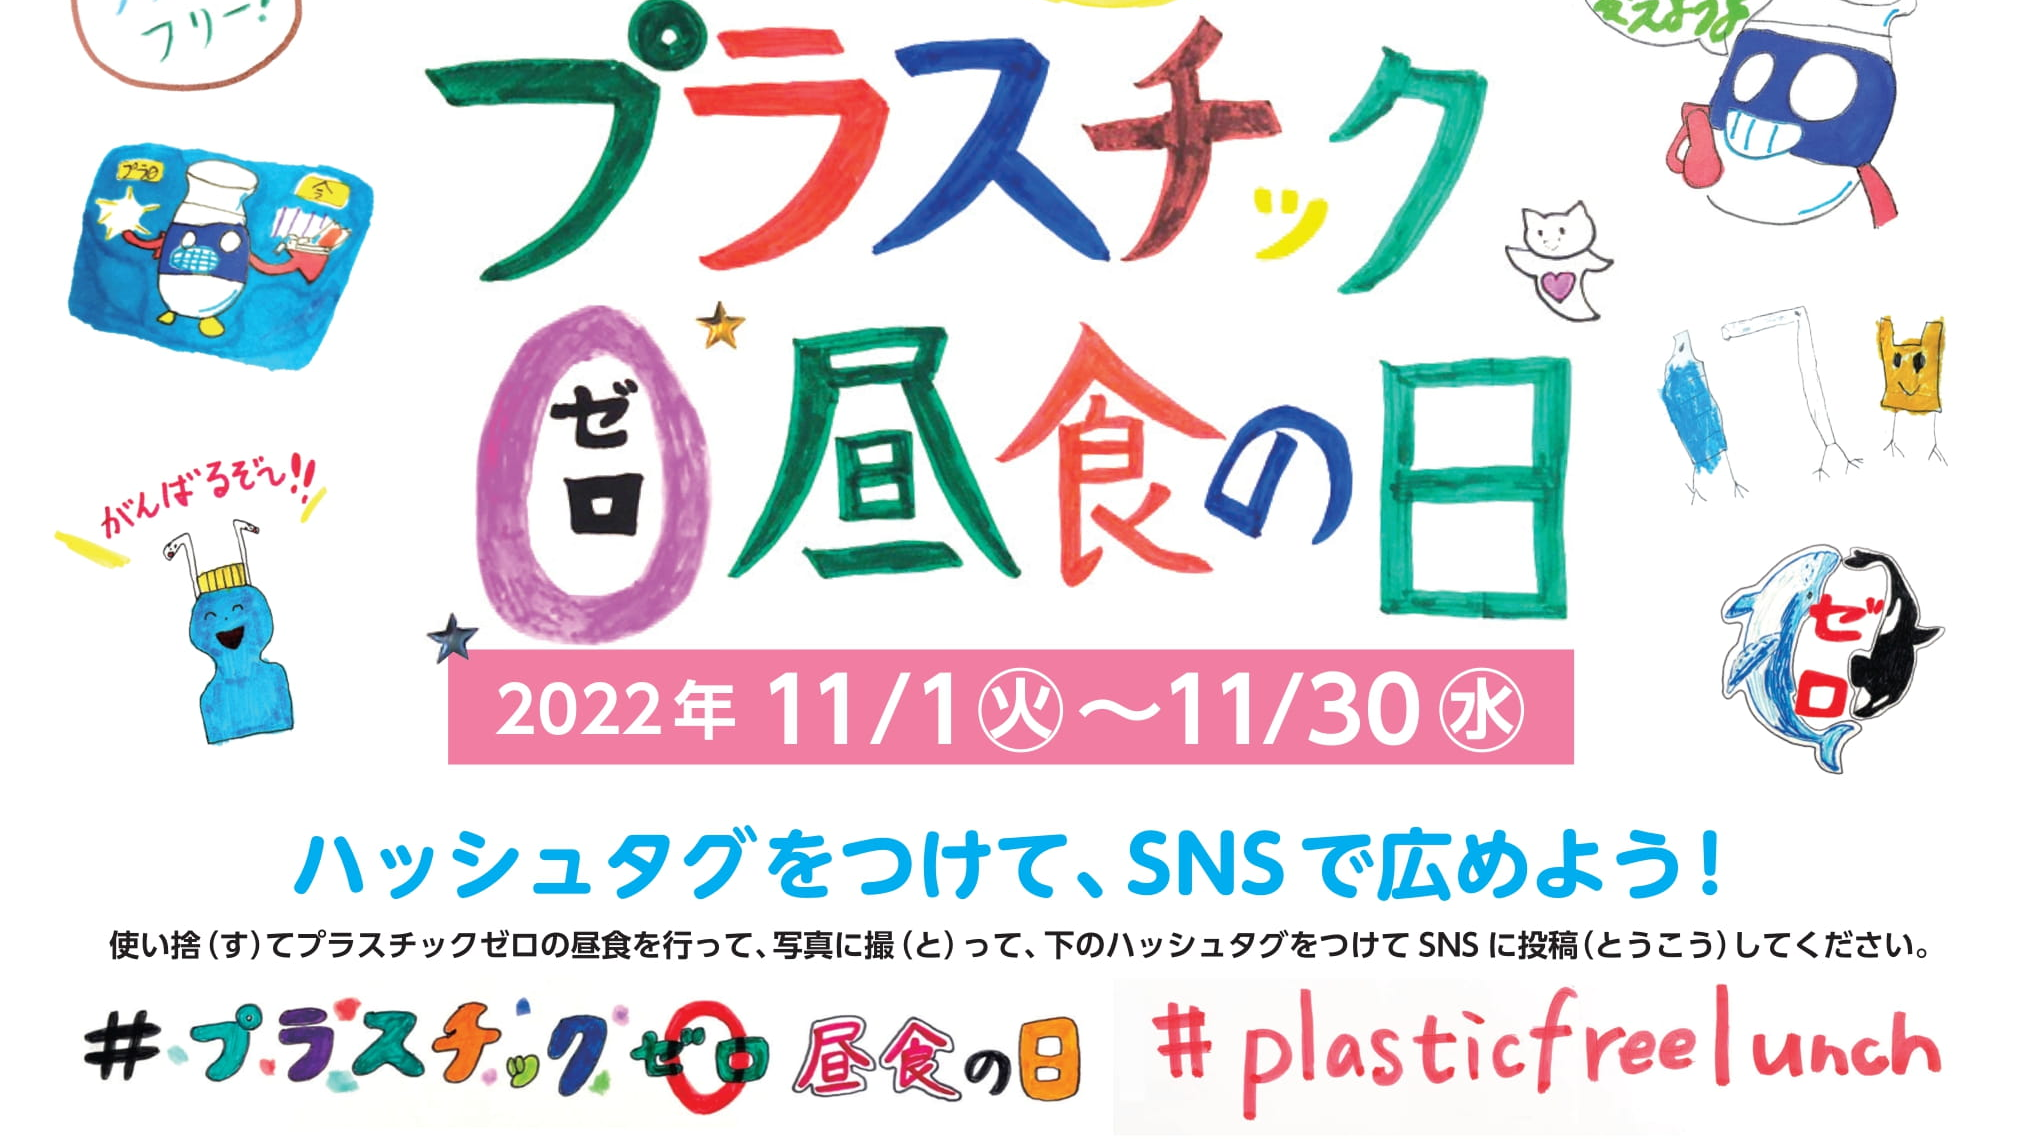 マイクロプラスチック ・ストーリー〜ぼくらが作る2050年〜 『プラスチックゼロ昼⾷（ちゅうしょく）の⽇』のポスター